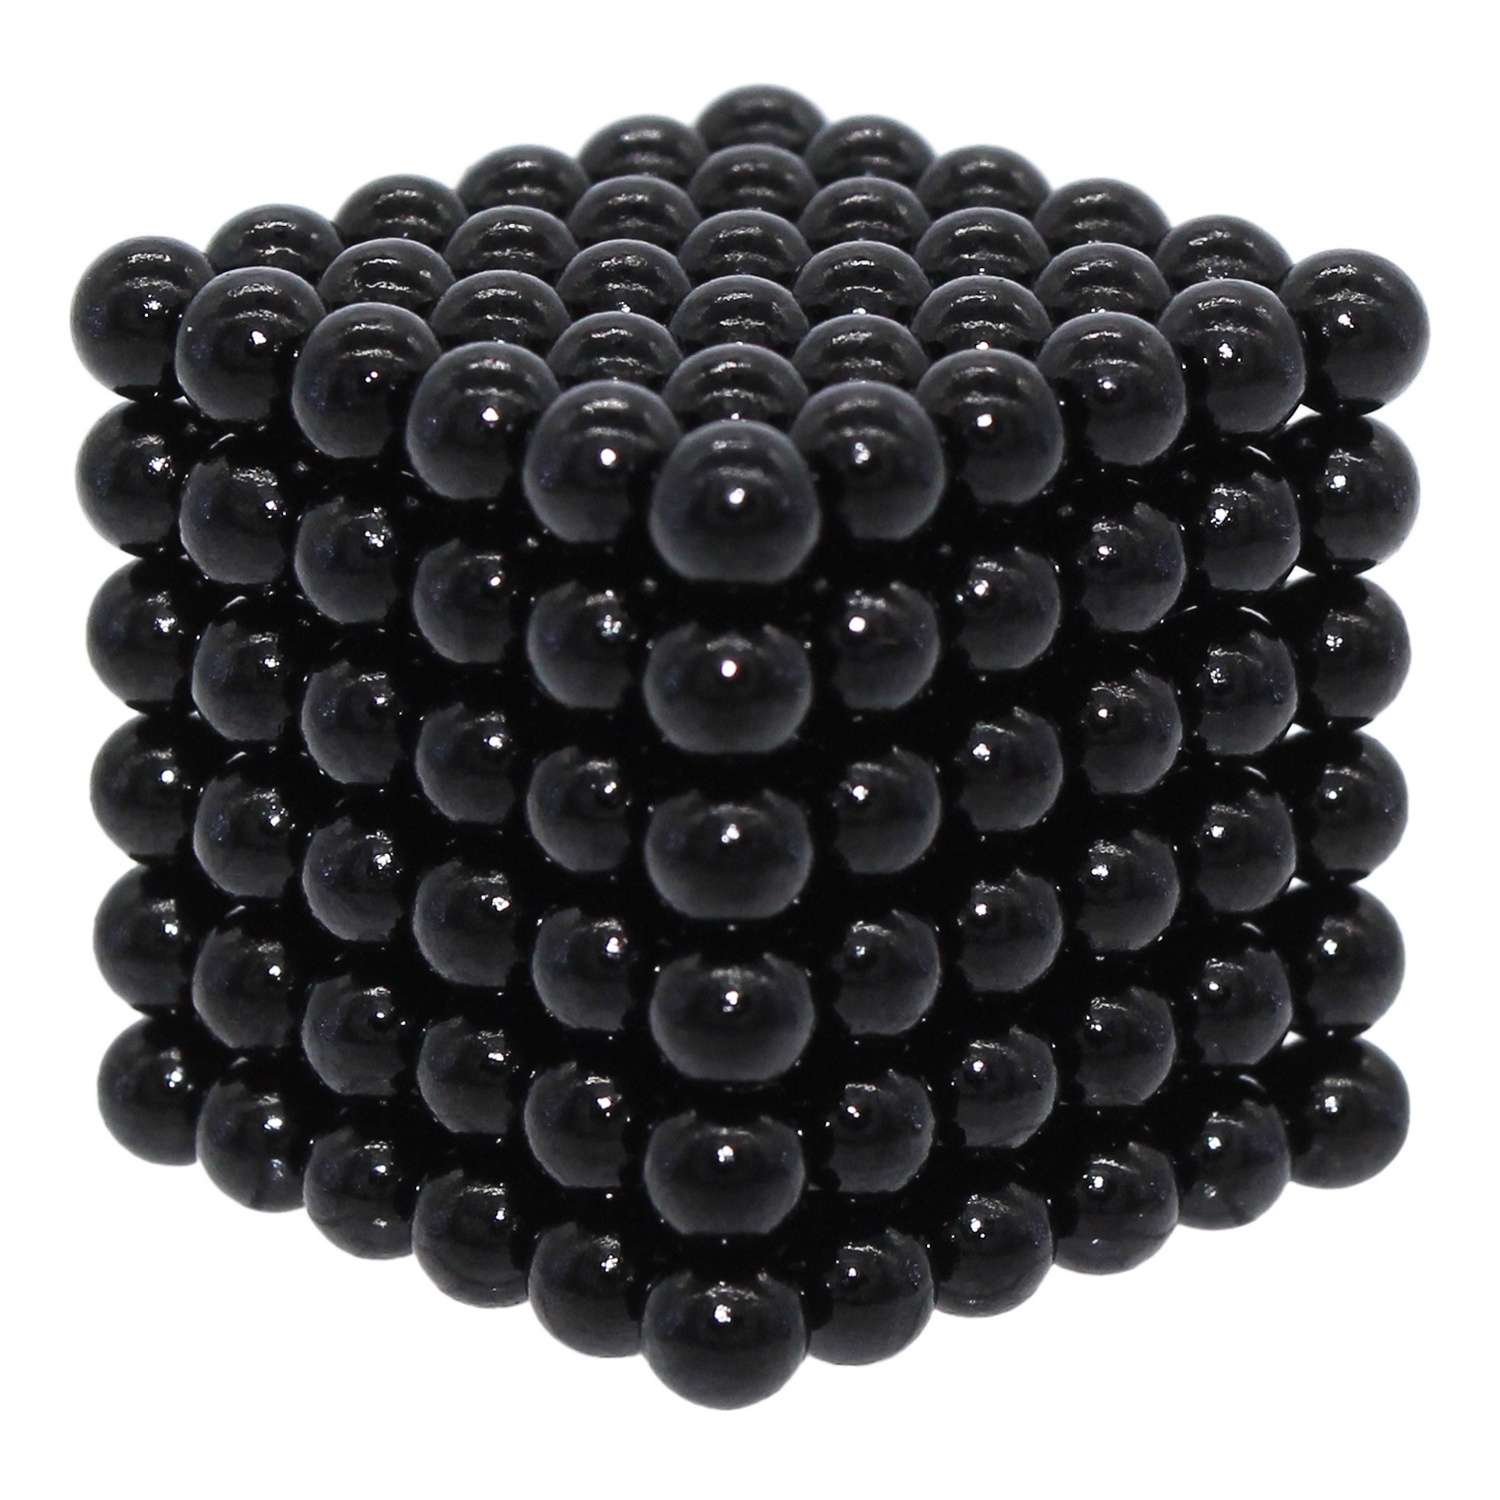 Головоломка магнитная Magnetic Cube черный неокуб 216 элементов - фото 6